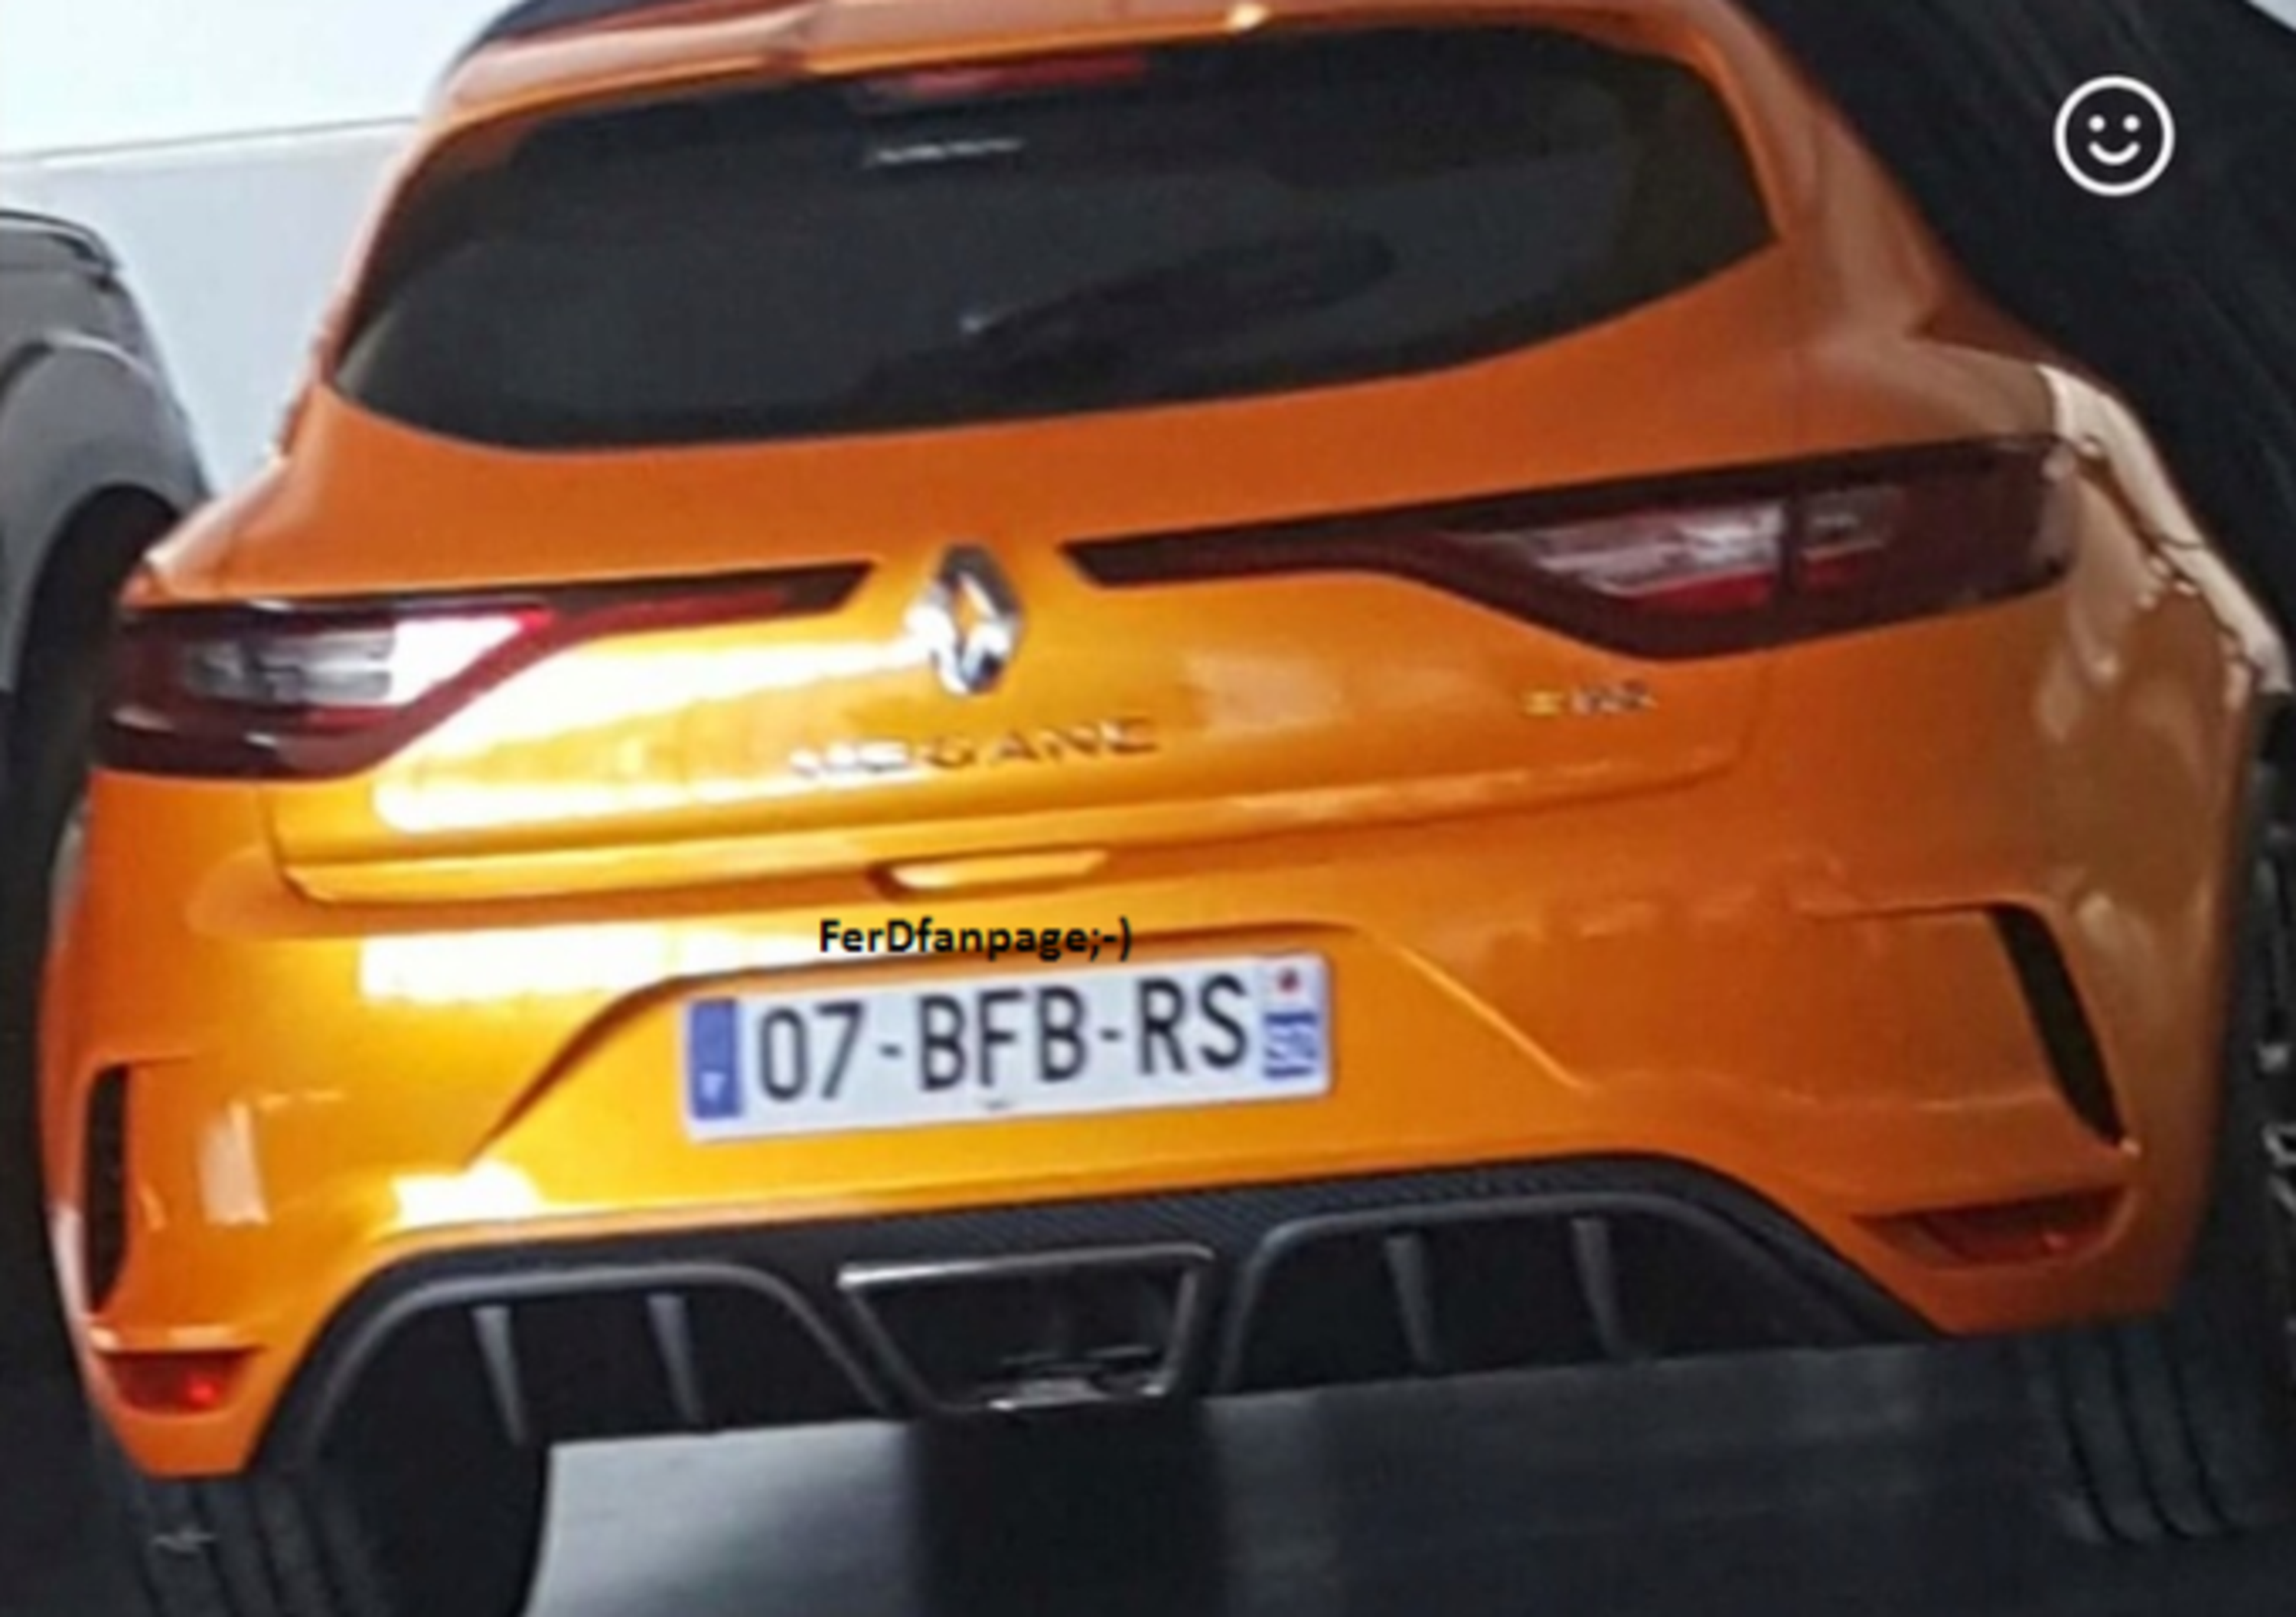 Renault Megane RS, pronta la terza generazione